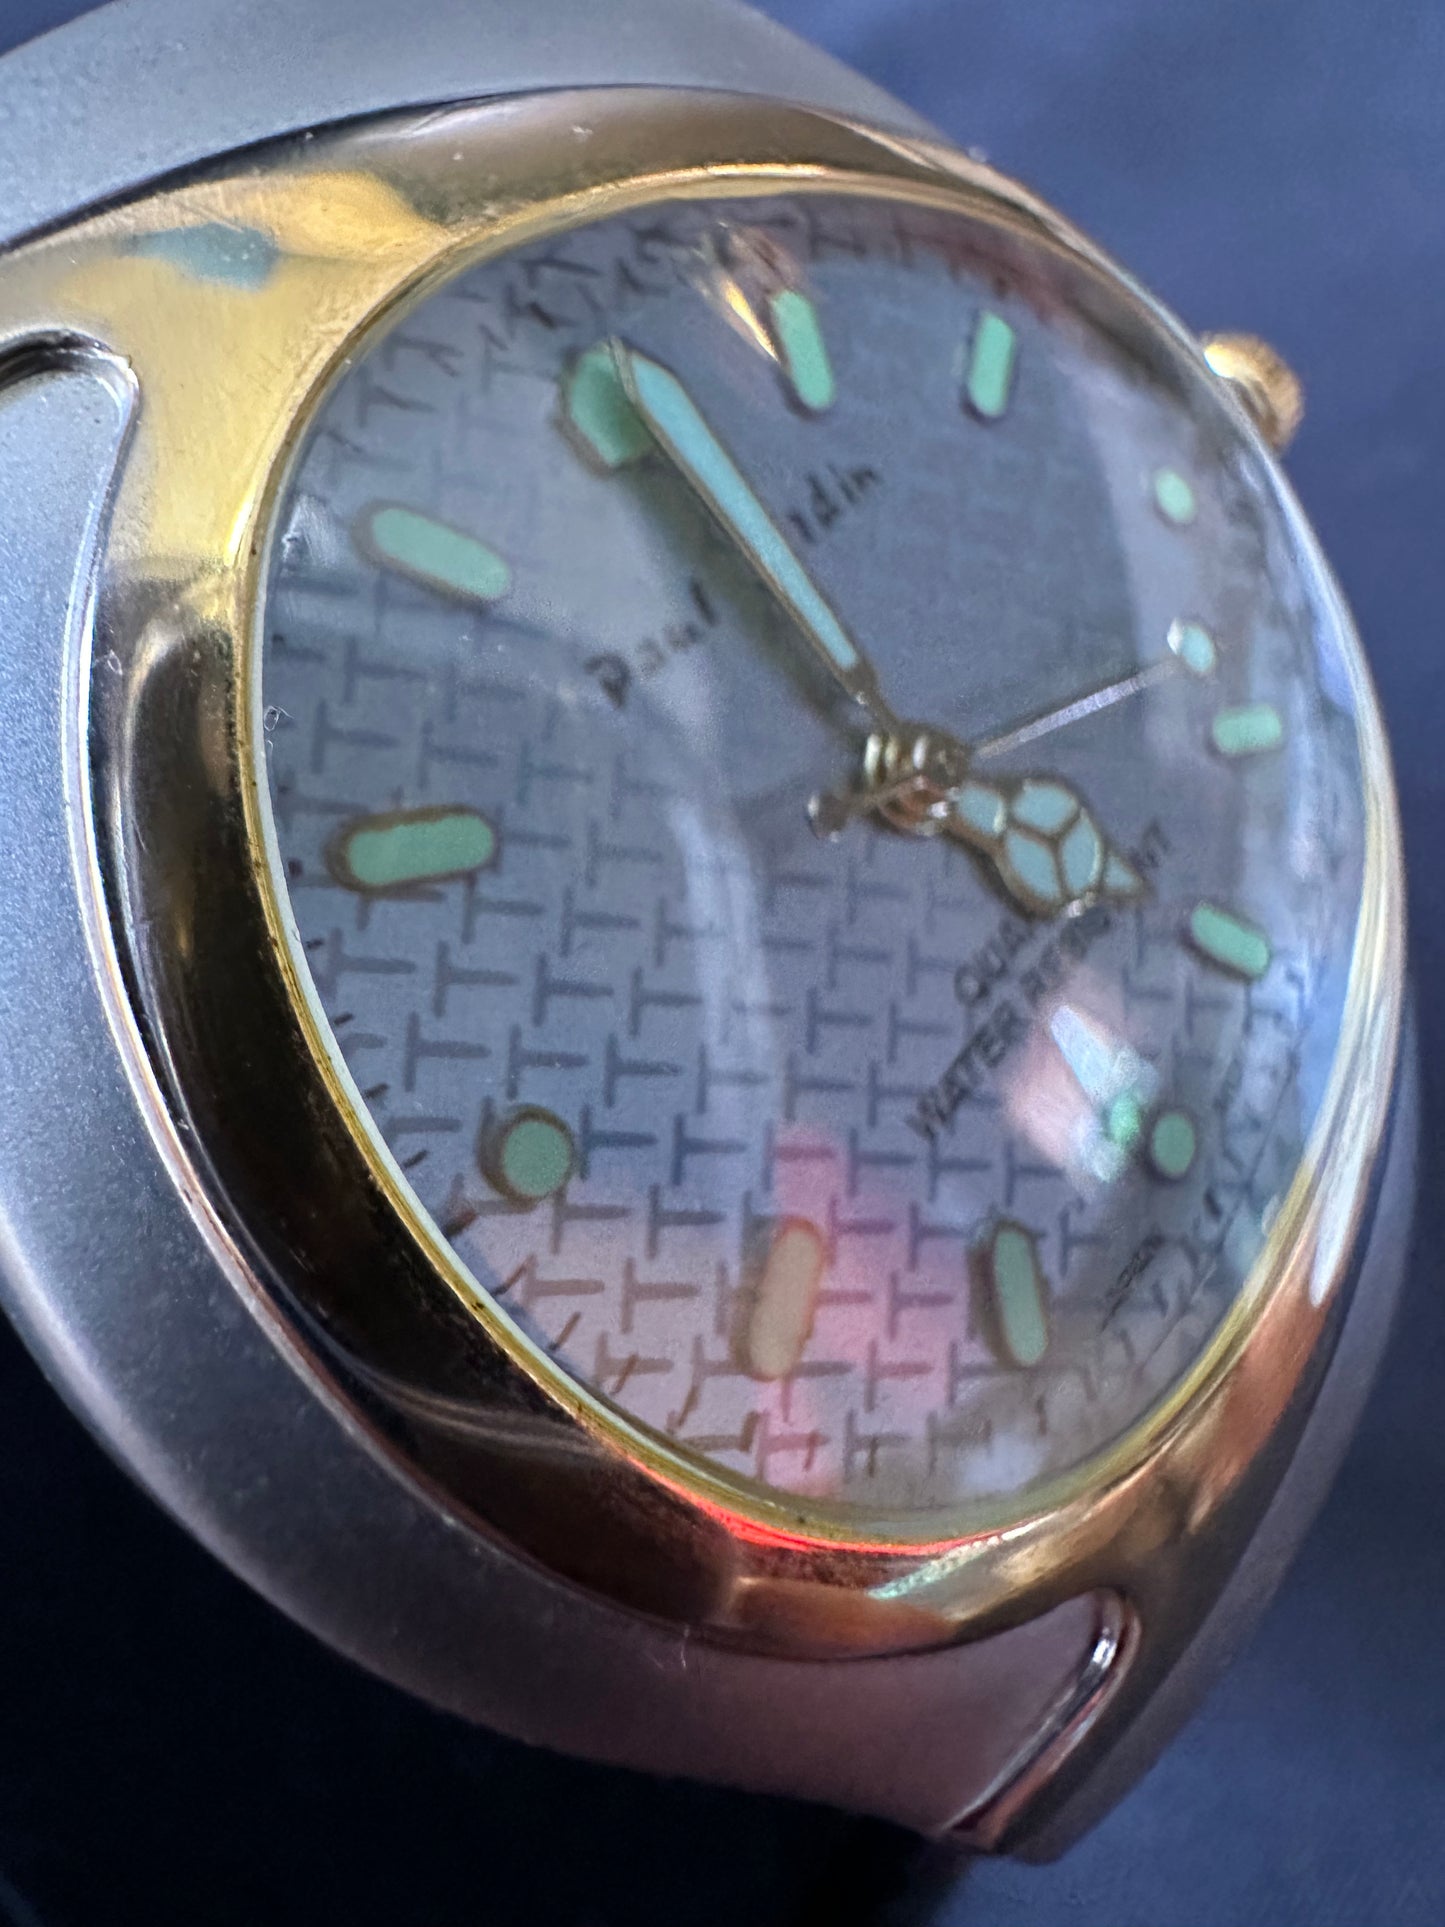 Paul Jardin Wristwatch with Quartz Movement - Water Resistant - Japan Movement